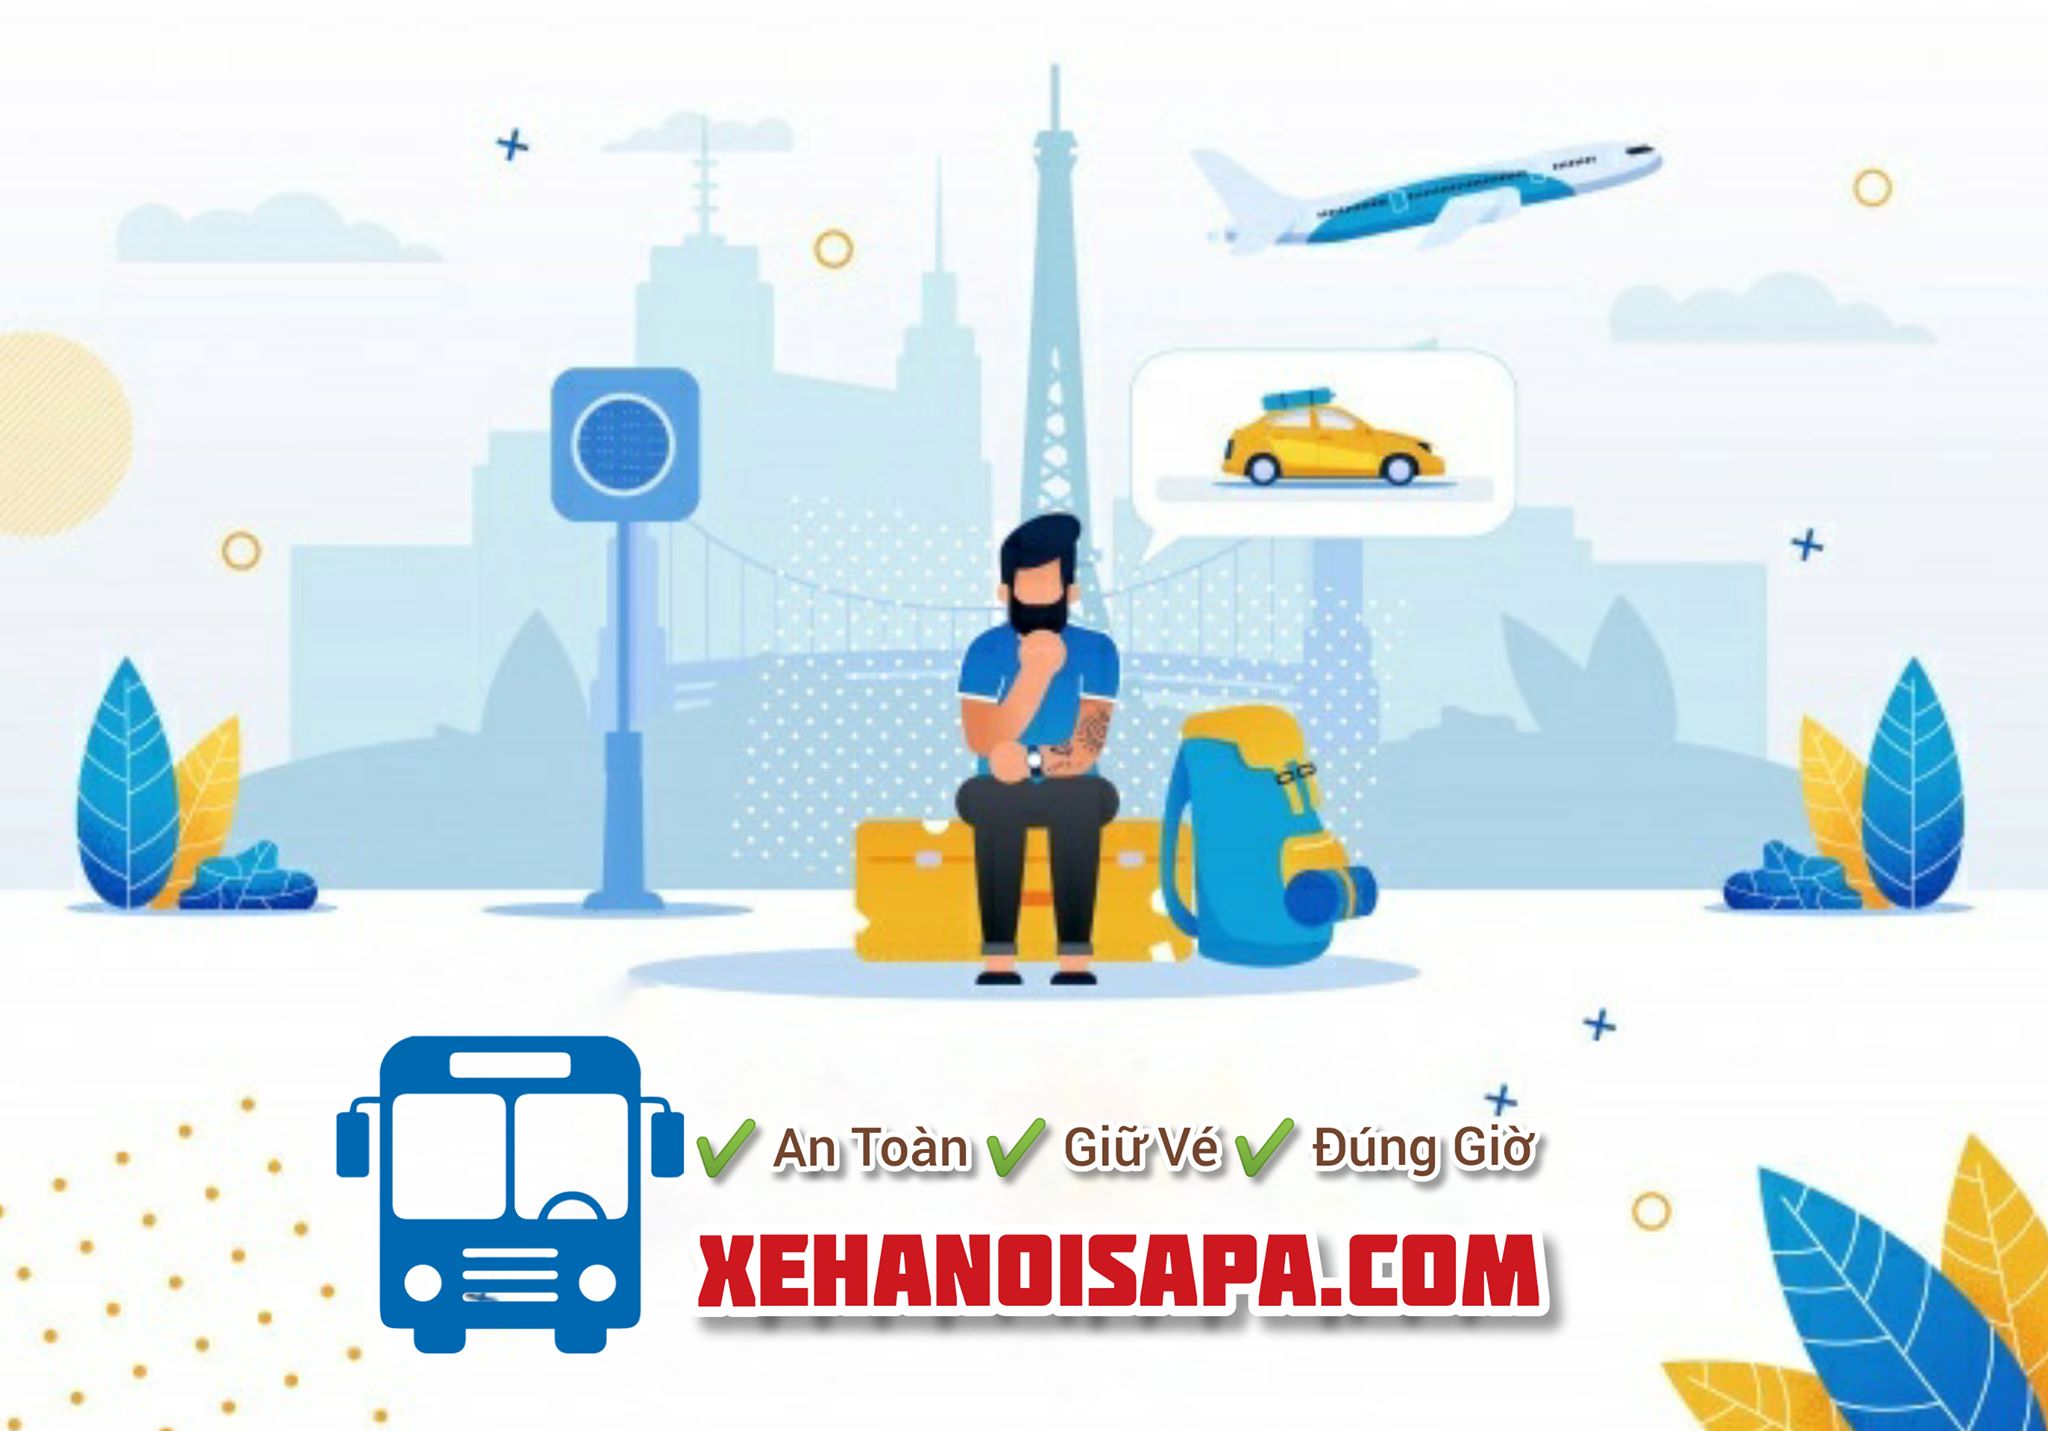 Hãng xe Sao Việt - Đặt vé nhanh tại Xehanoisapaa.com 